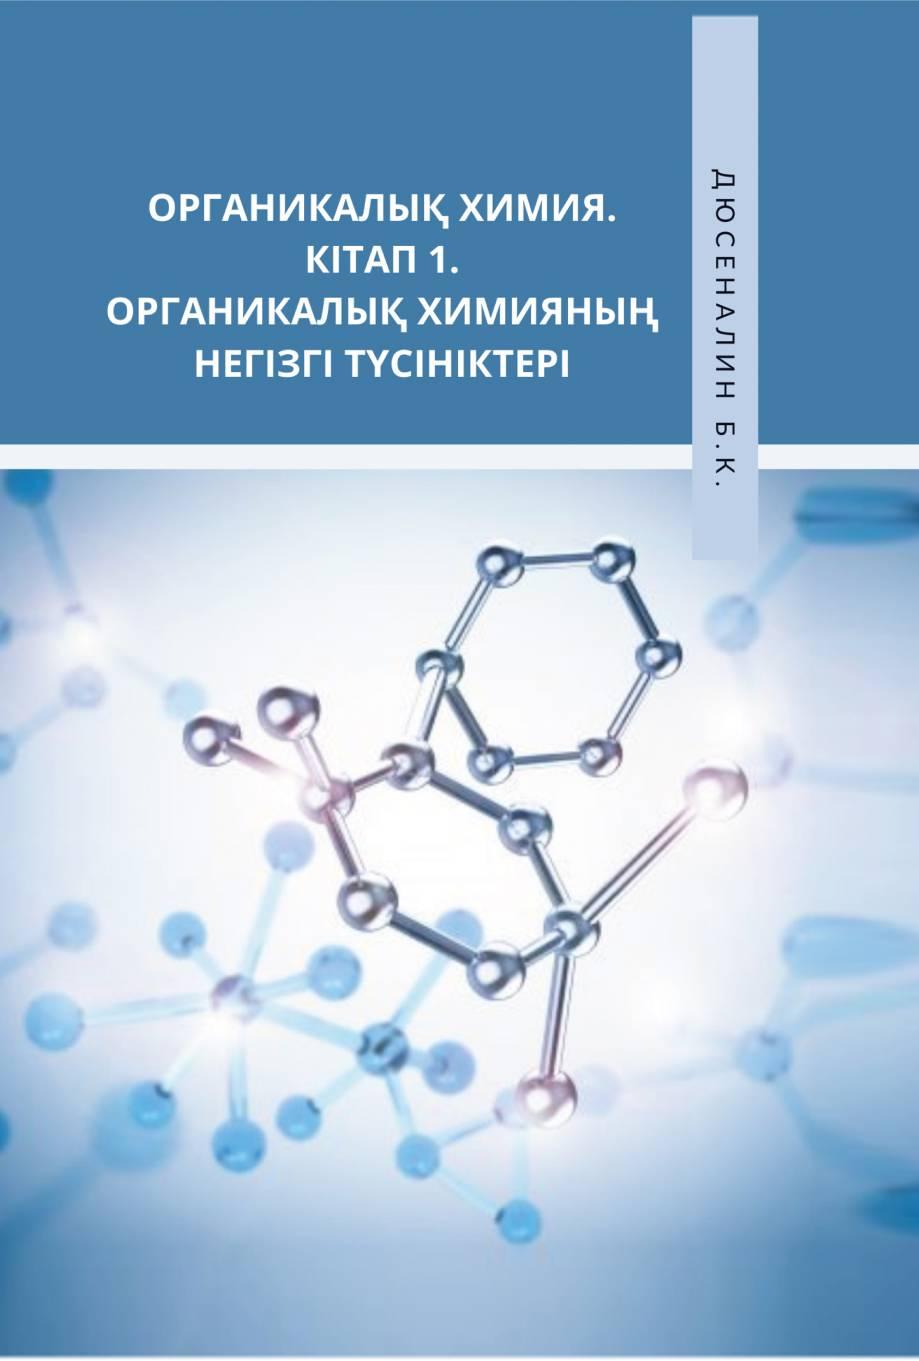 Органикалық химия. Кітап 1. Органикалық химияның негізгітүсініктері. Оқу құралы.